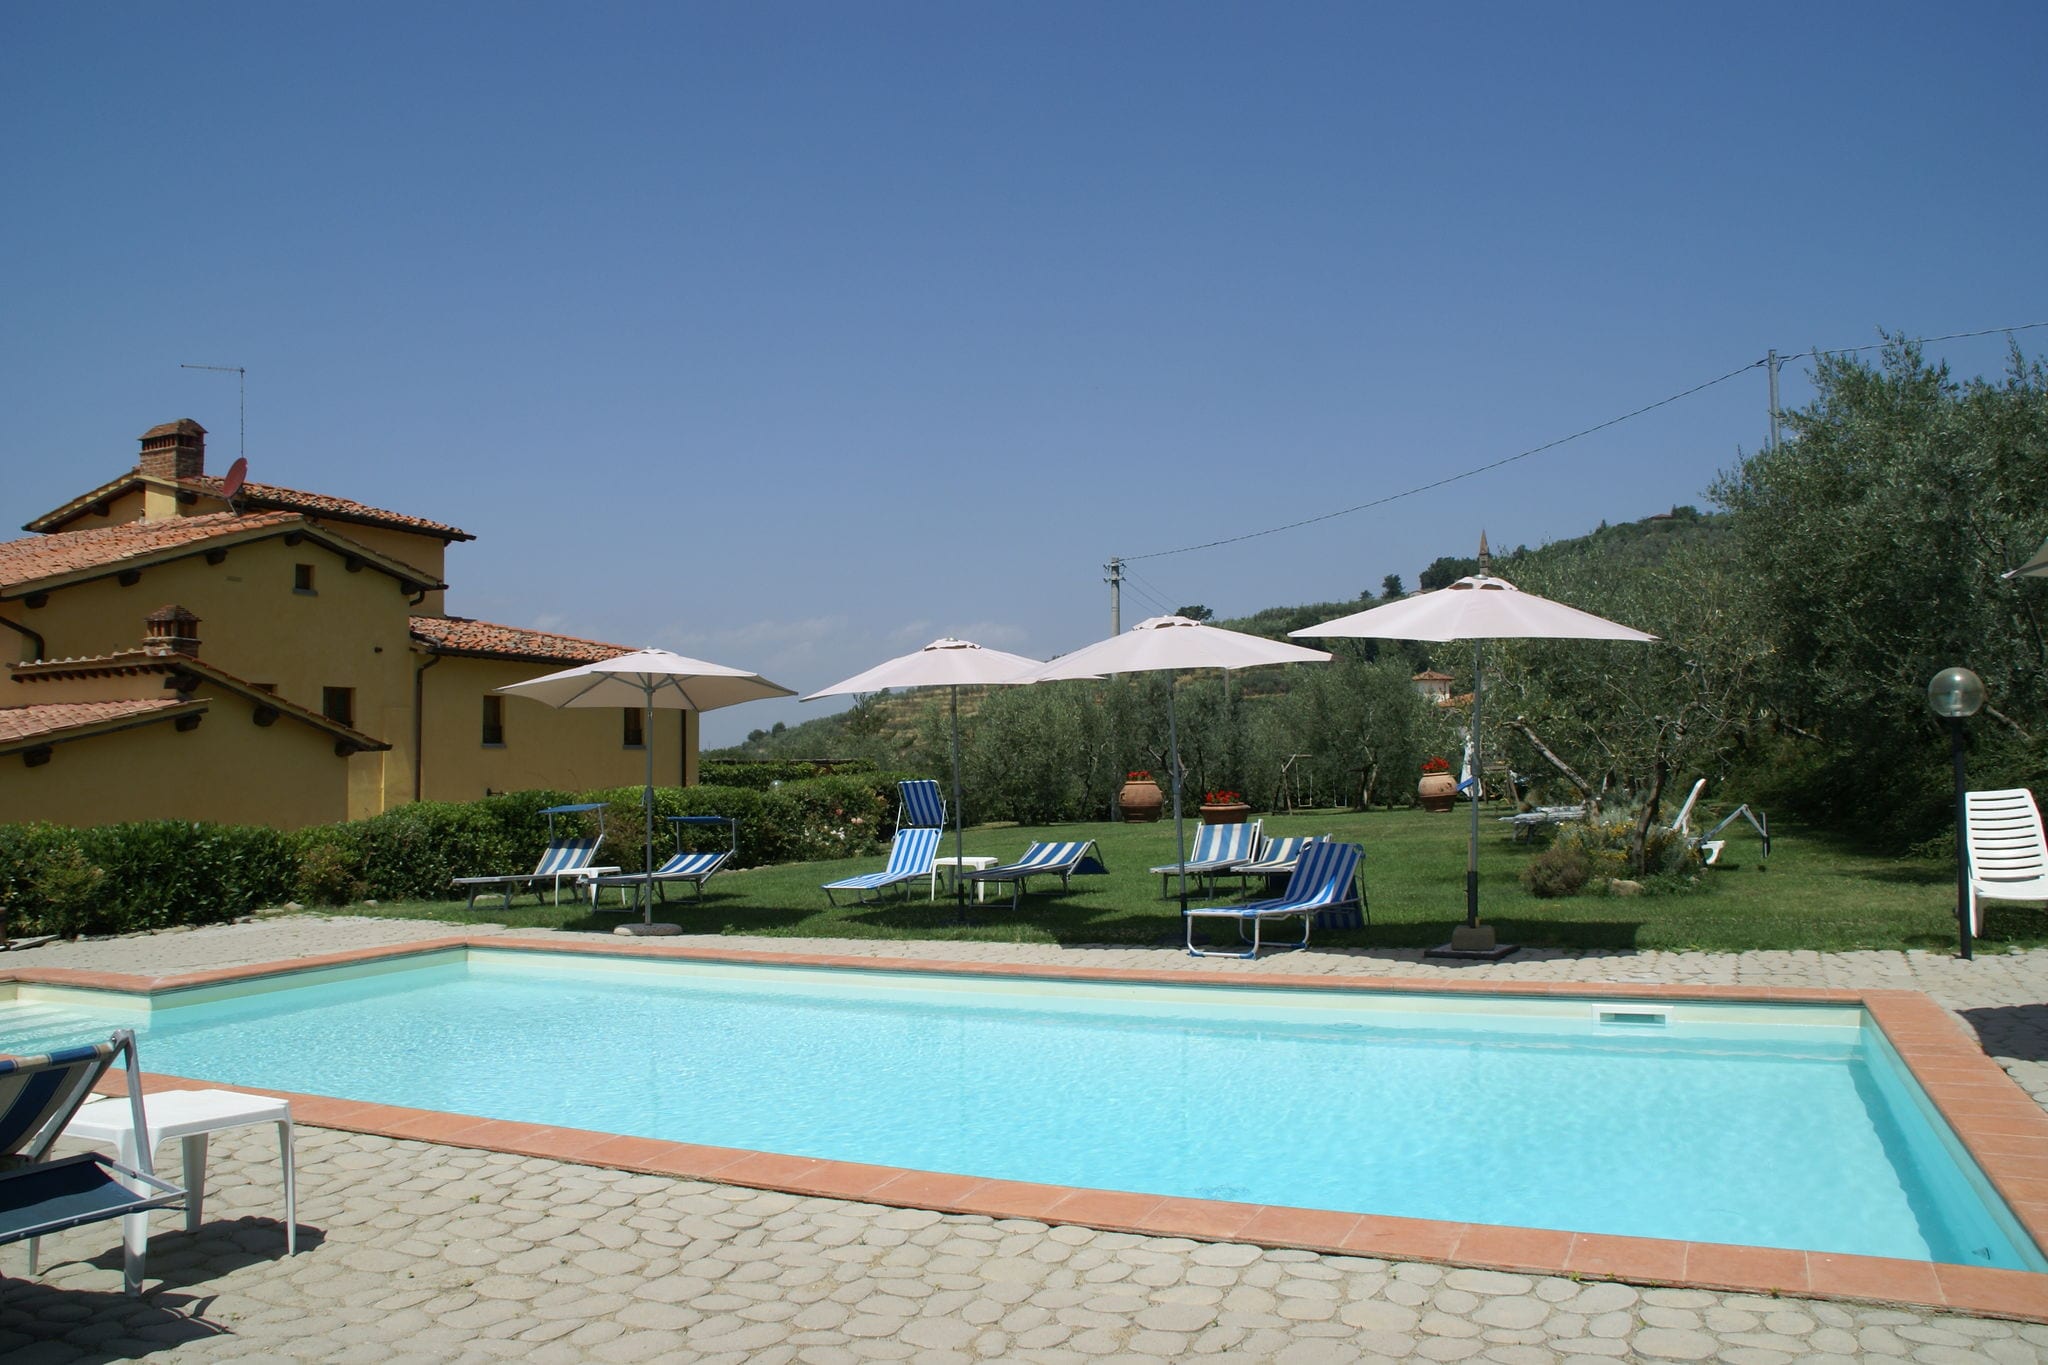 Schitterende villa met zwembad in Toscane